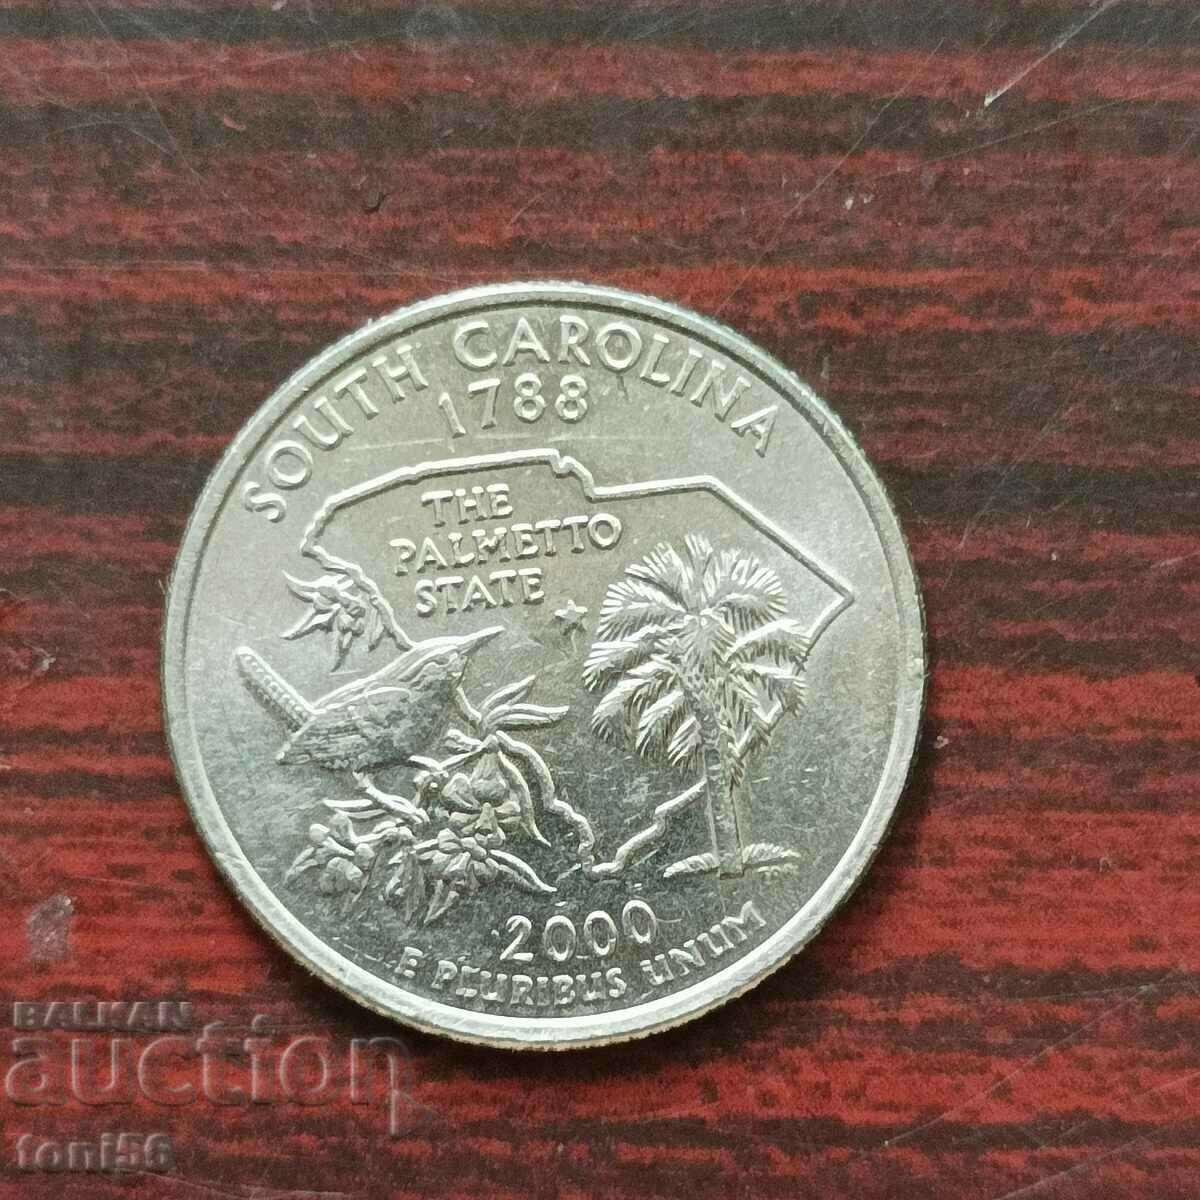 1/4 Δολάριο ΗΠΑ 2000 D - Νότια Καρολίνα UNC